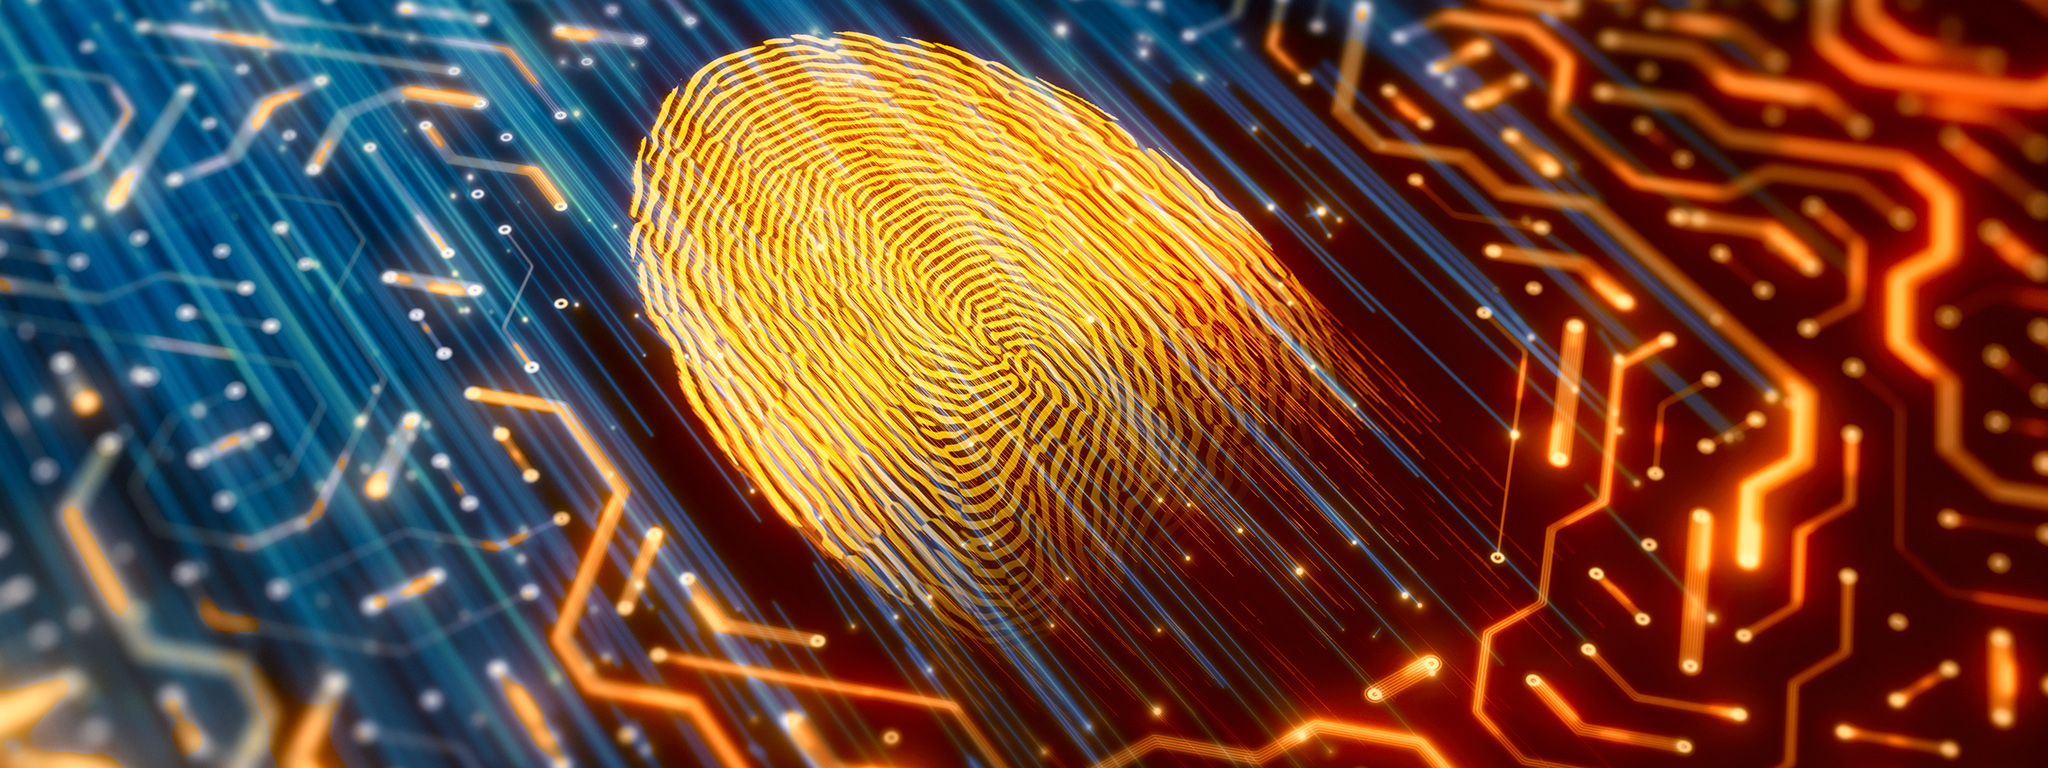 Un’impronta digitale illuminata in colore oro e scheda a circuiti stampati con sfondo scuro e circuiti iridescenti di colore arancione e blu